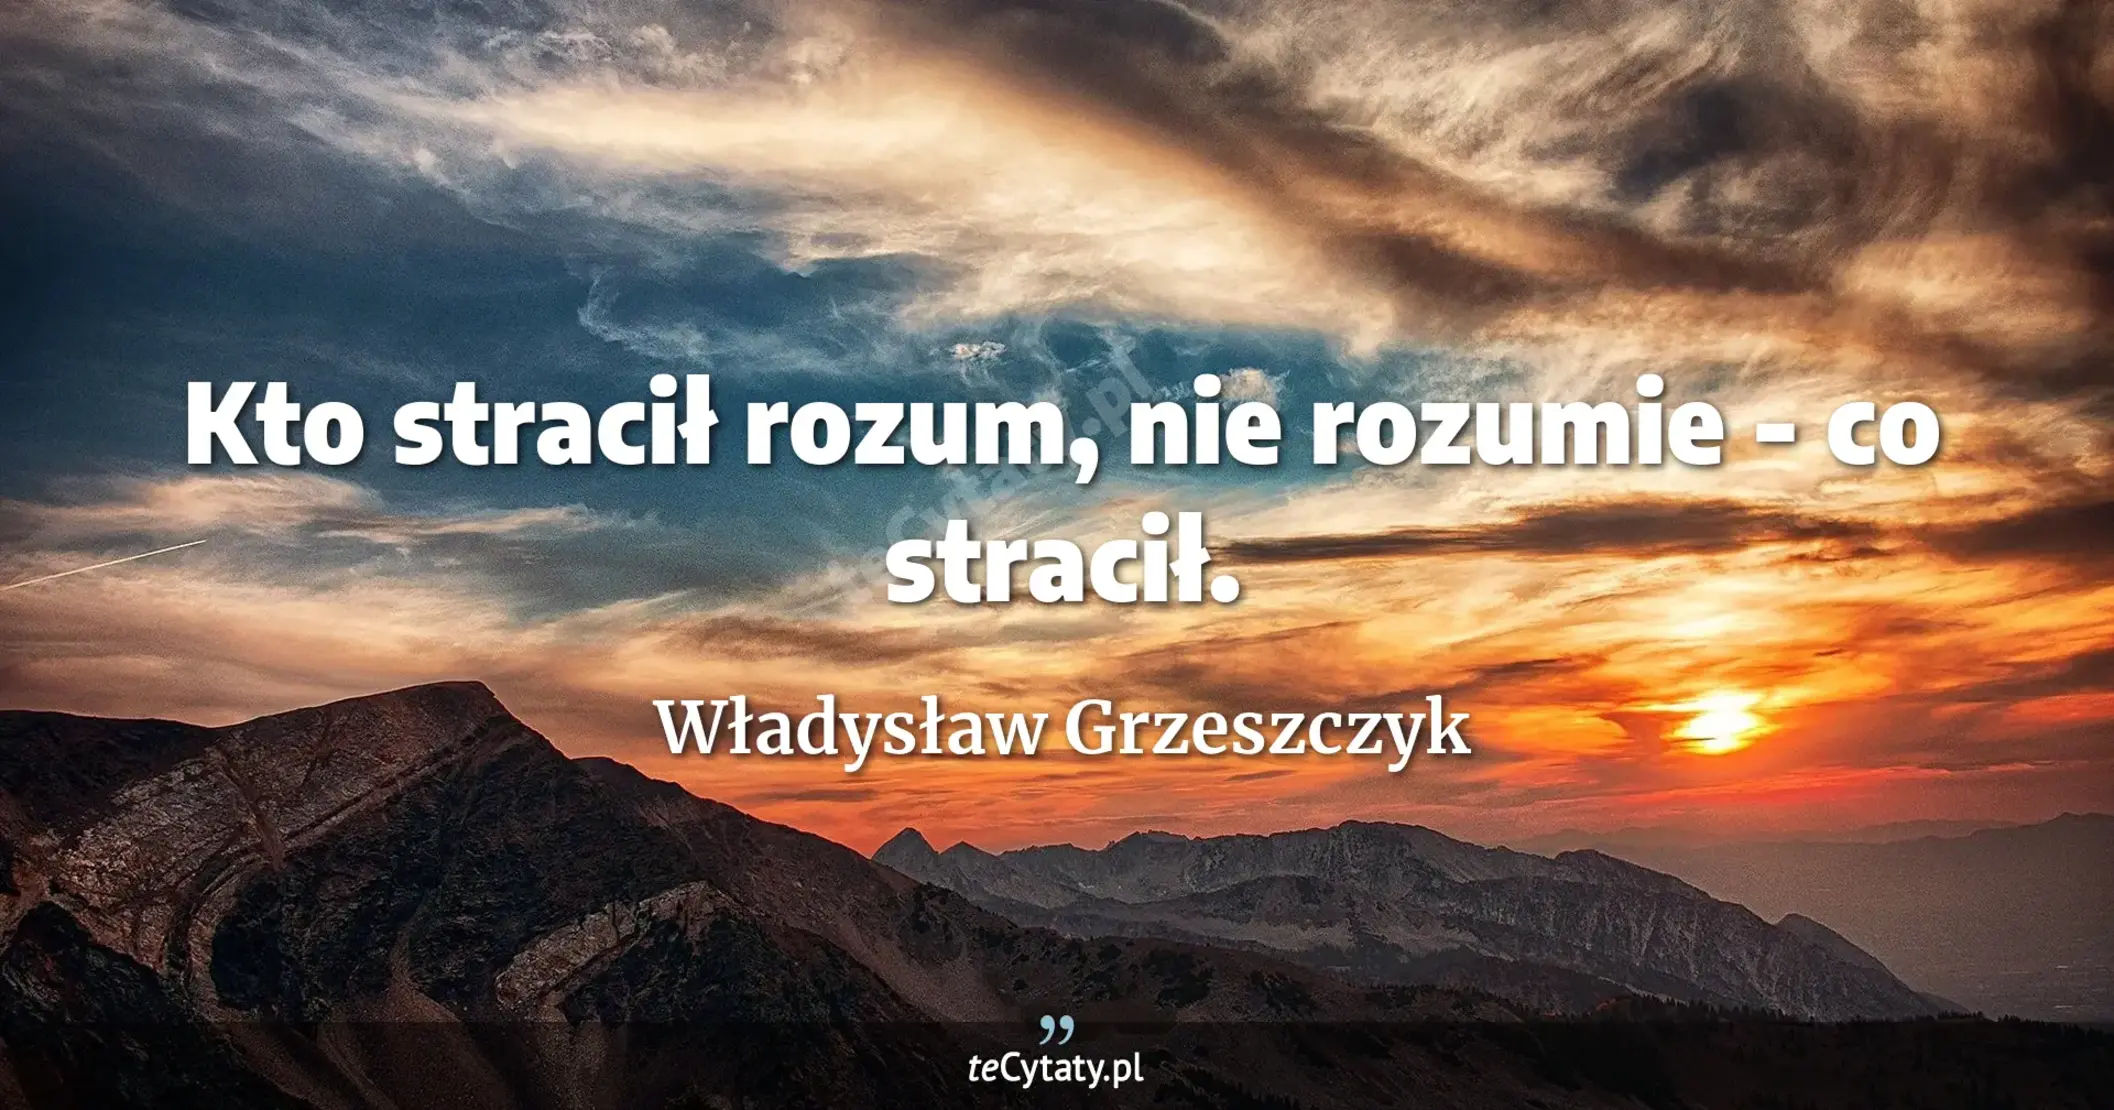 Kto stracił rozum, nie rozumie - co stracił. - Władysław Grzeszczyk